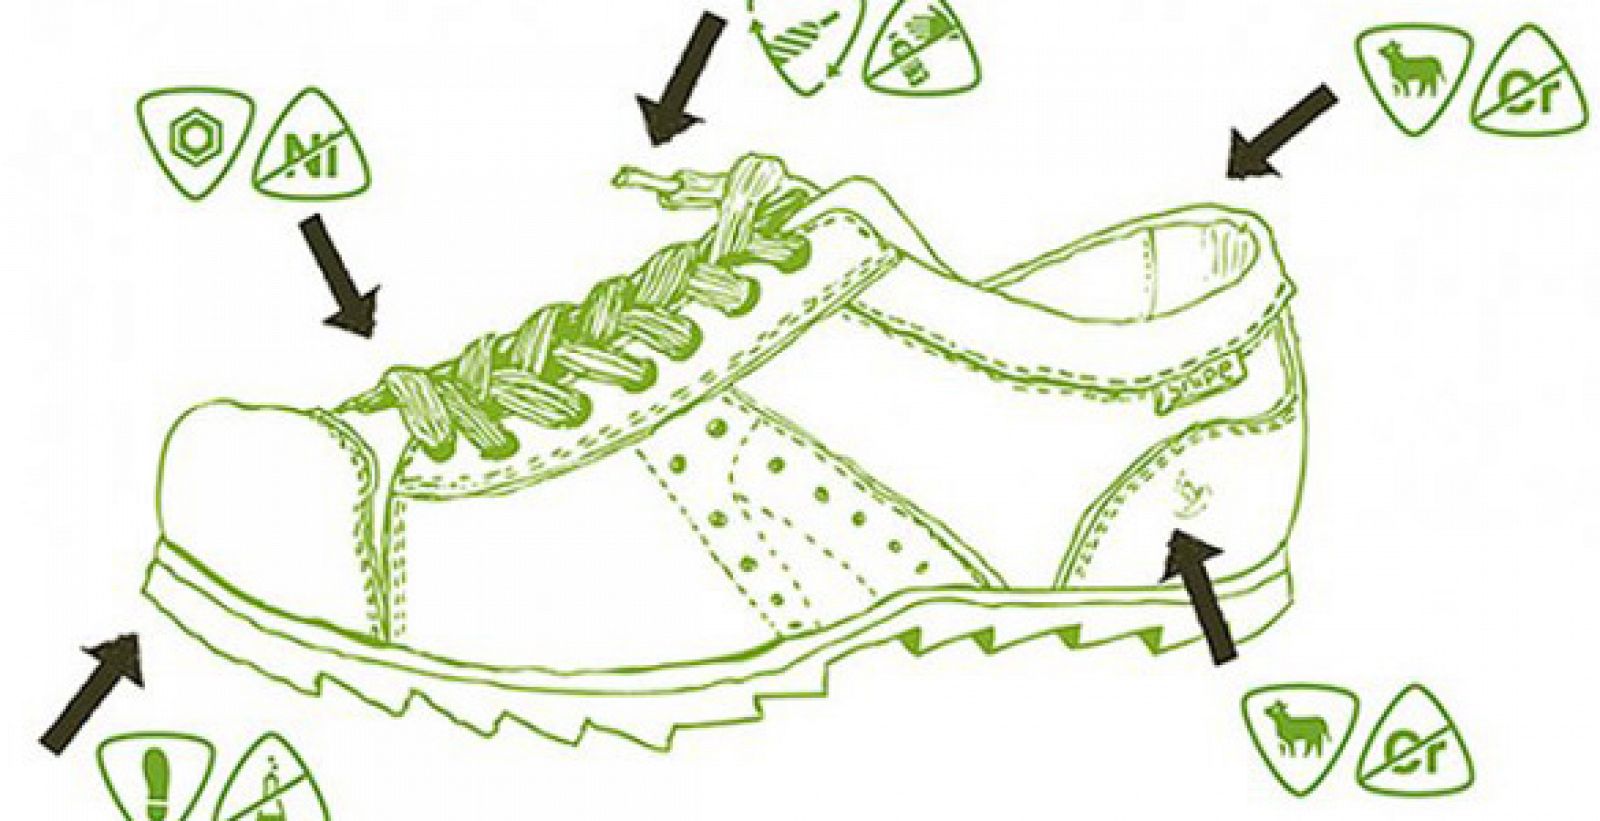 Diseño del zapato biodegradable fabricado con materiales naturales y metales no tóxicos